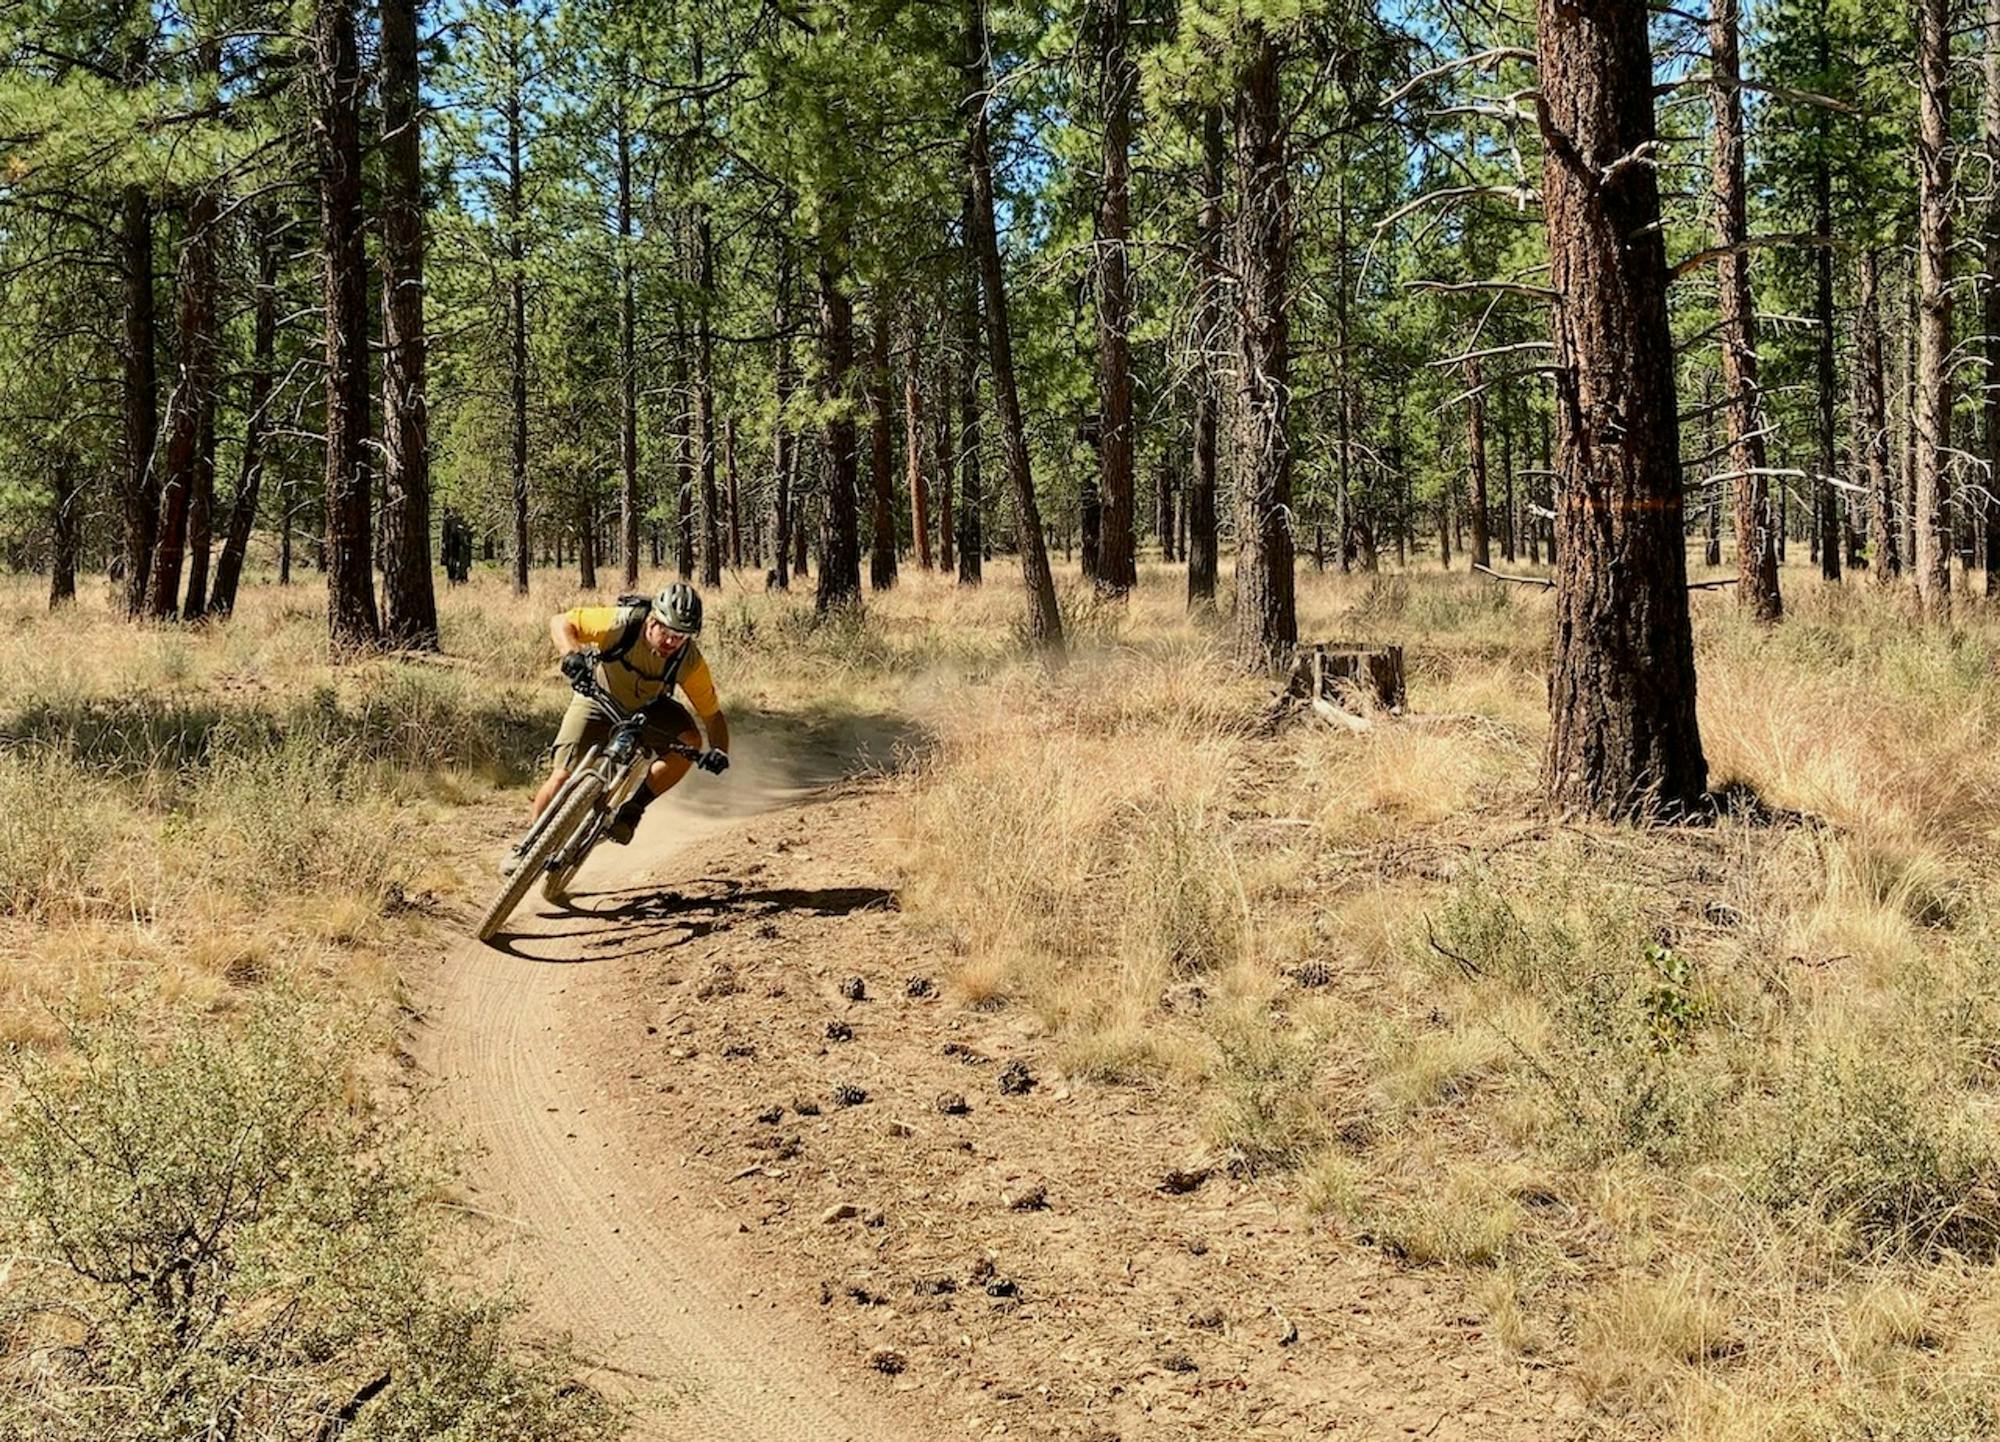 Phil's Trail. Rider: Greg Heil